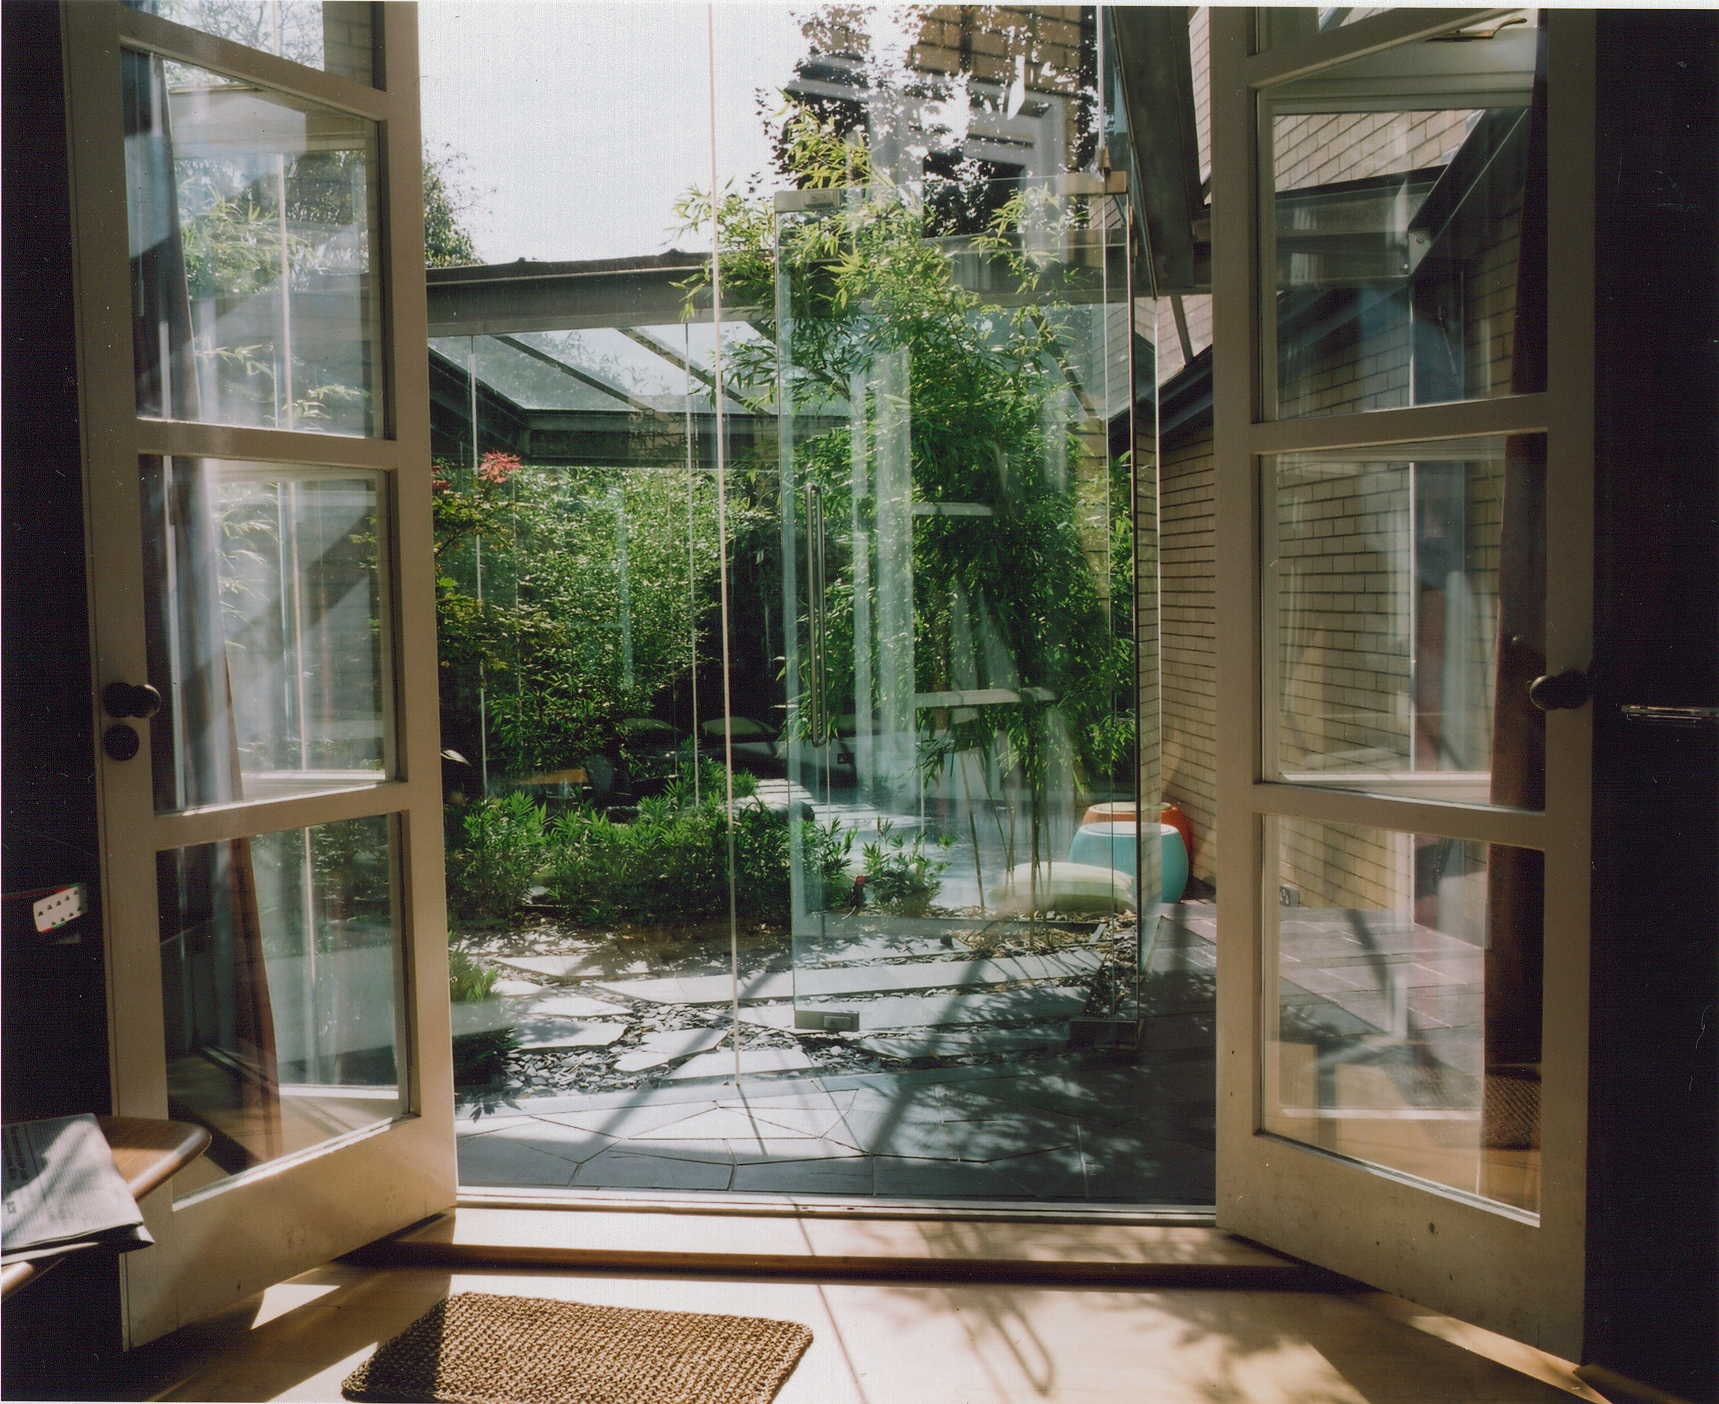 Frameless glass extension onto garden patio, Dartmouth park, London.